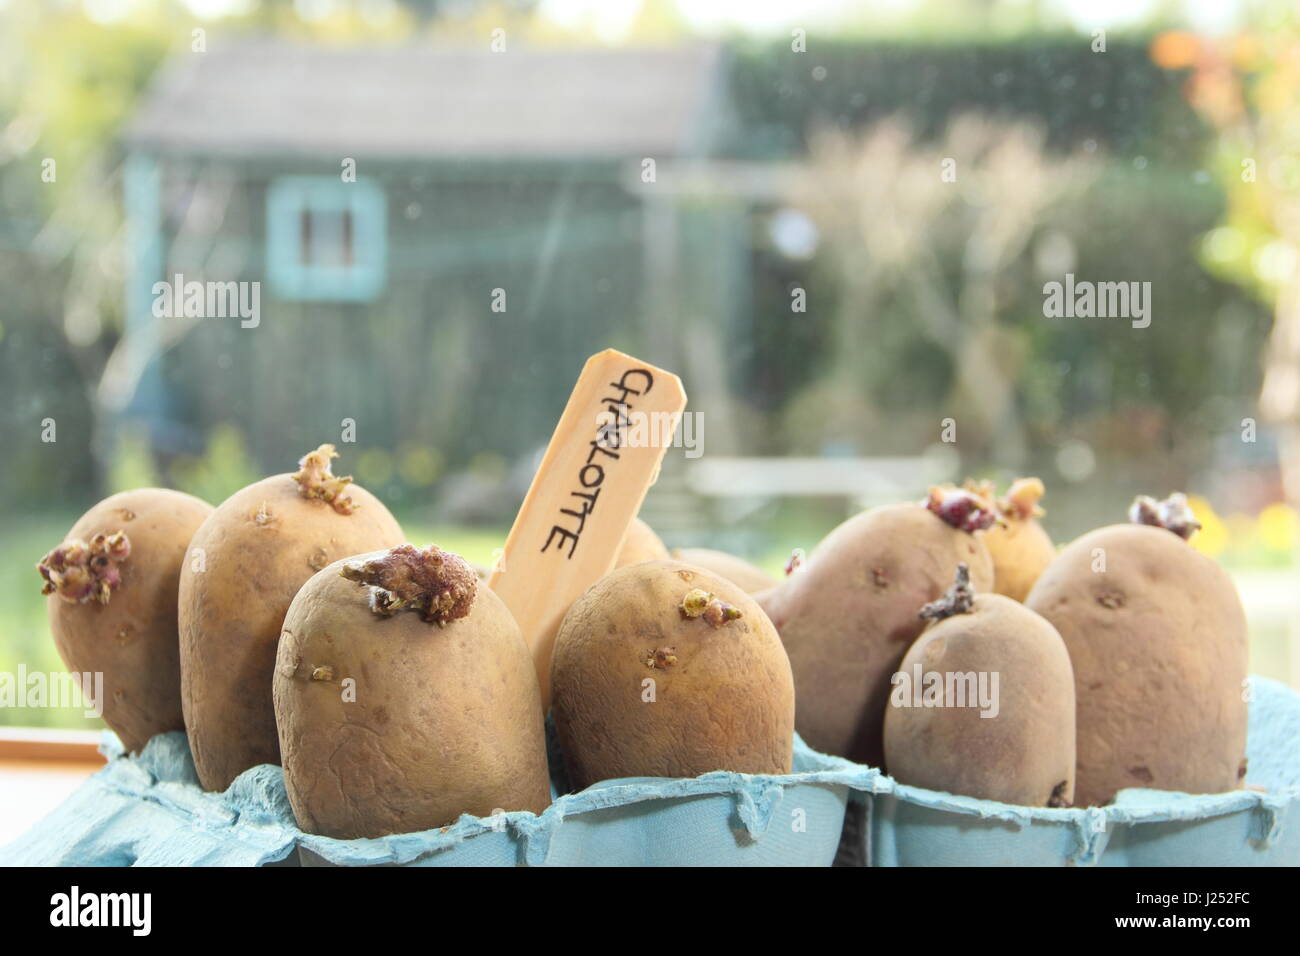 Pflanzkartoffeln Kartoffeln in Ei Boxcontainer auf sonnigen Fensterbank Förderung starke Sprossen vor dem Auspflanzen im Garten (im Bild) Stockfoto